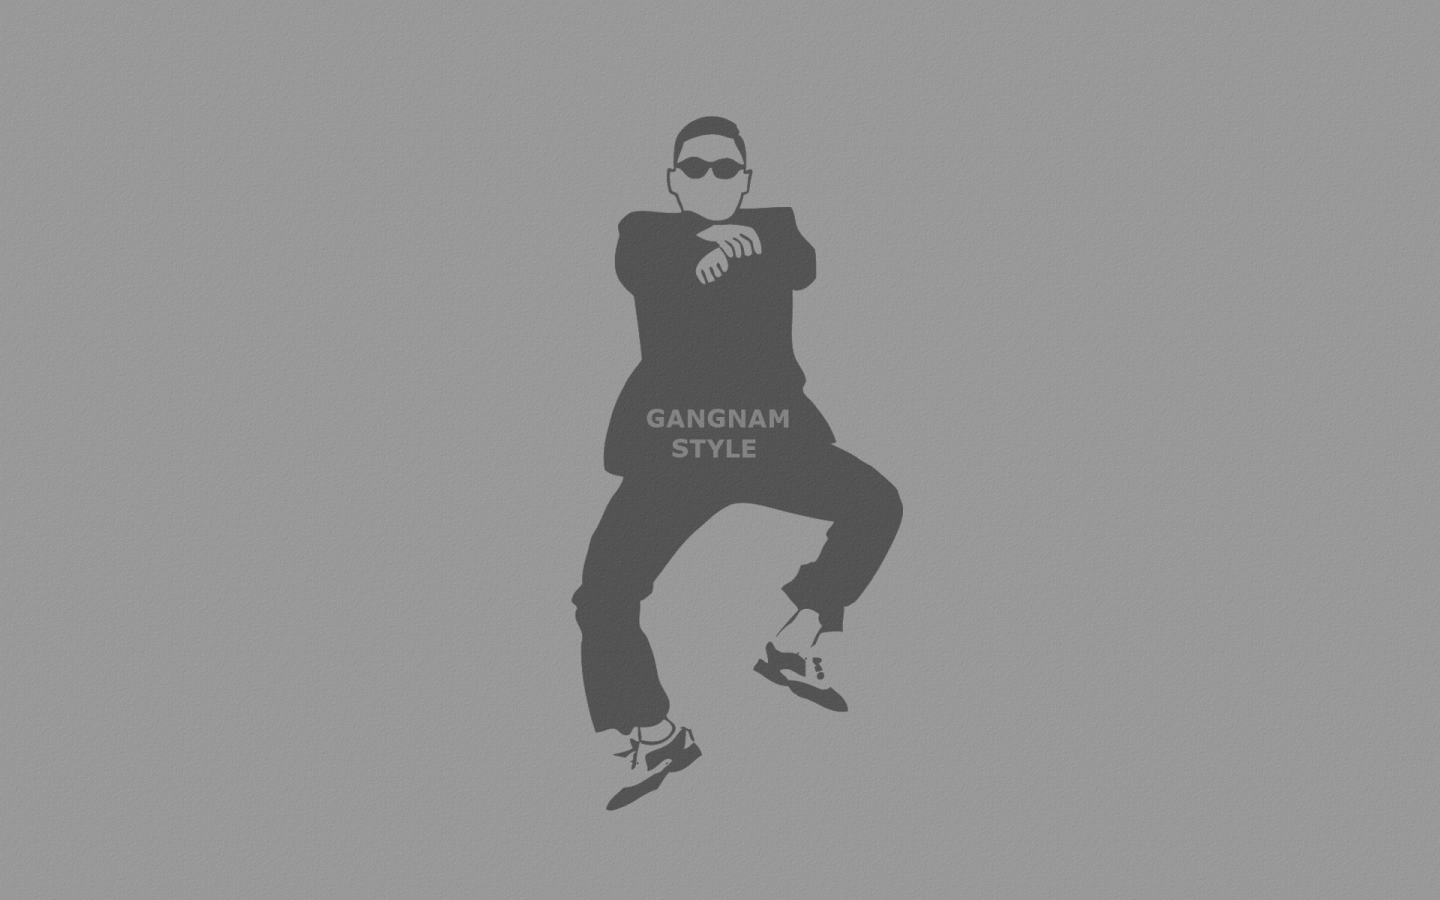 серый фон, танец, Gangnam style, надпись, очки, человек, psy